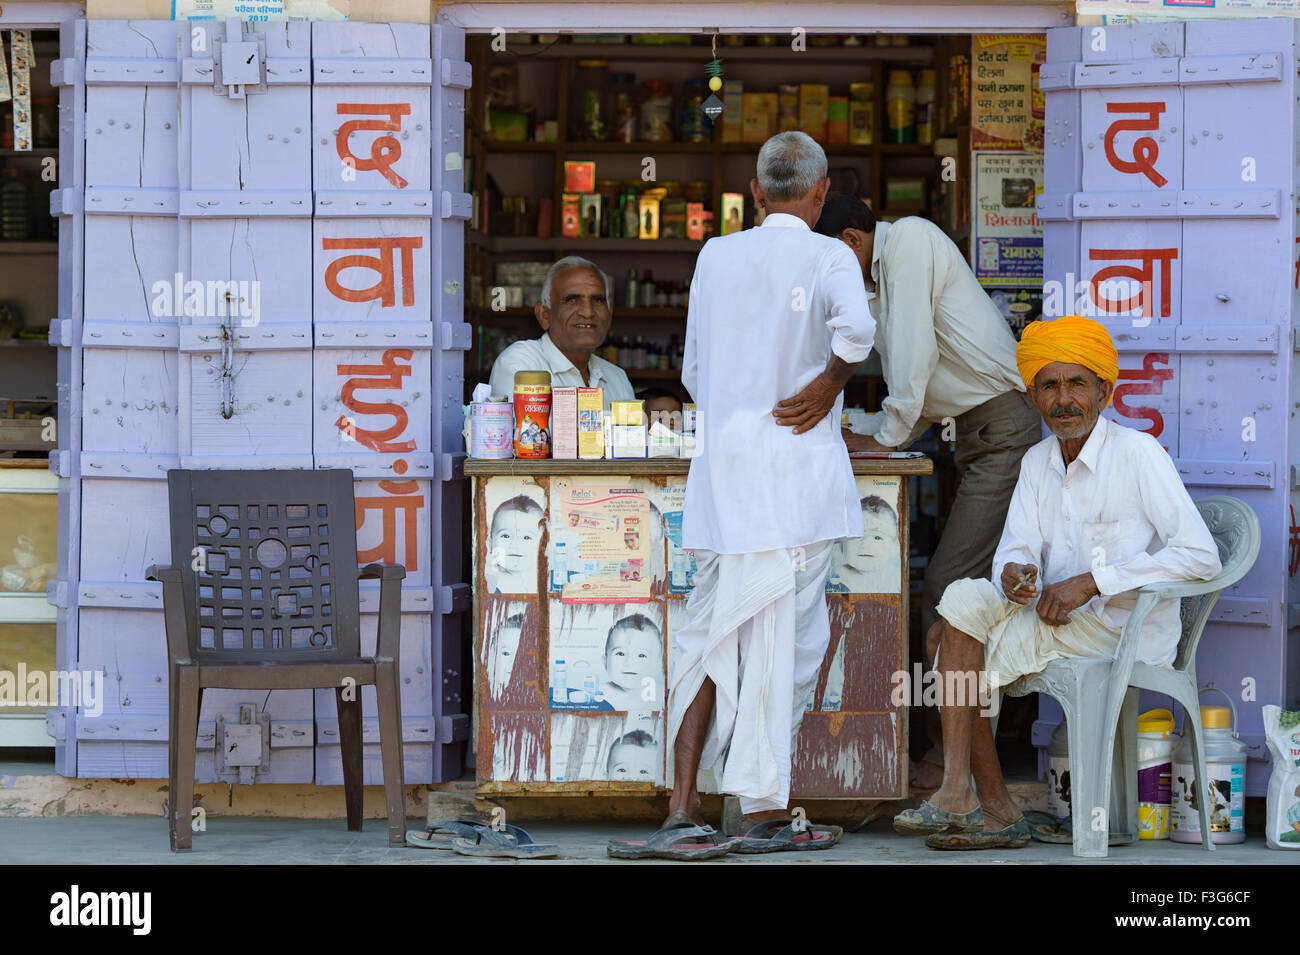 Les gens non identifiés posent pour l'appareil photo dans les rues de Pushkar, Inde. Banque D'Images